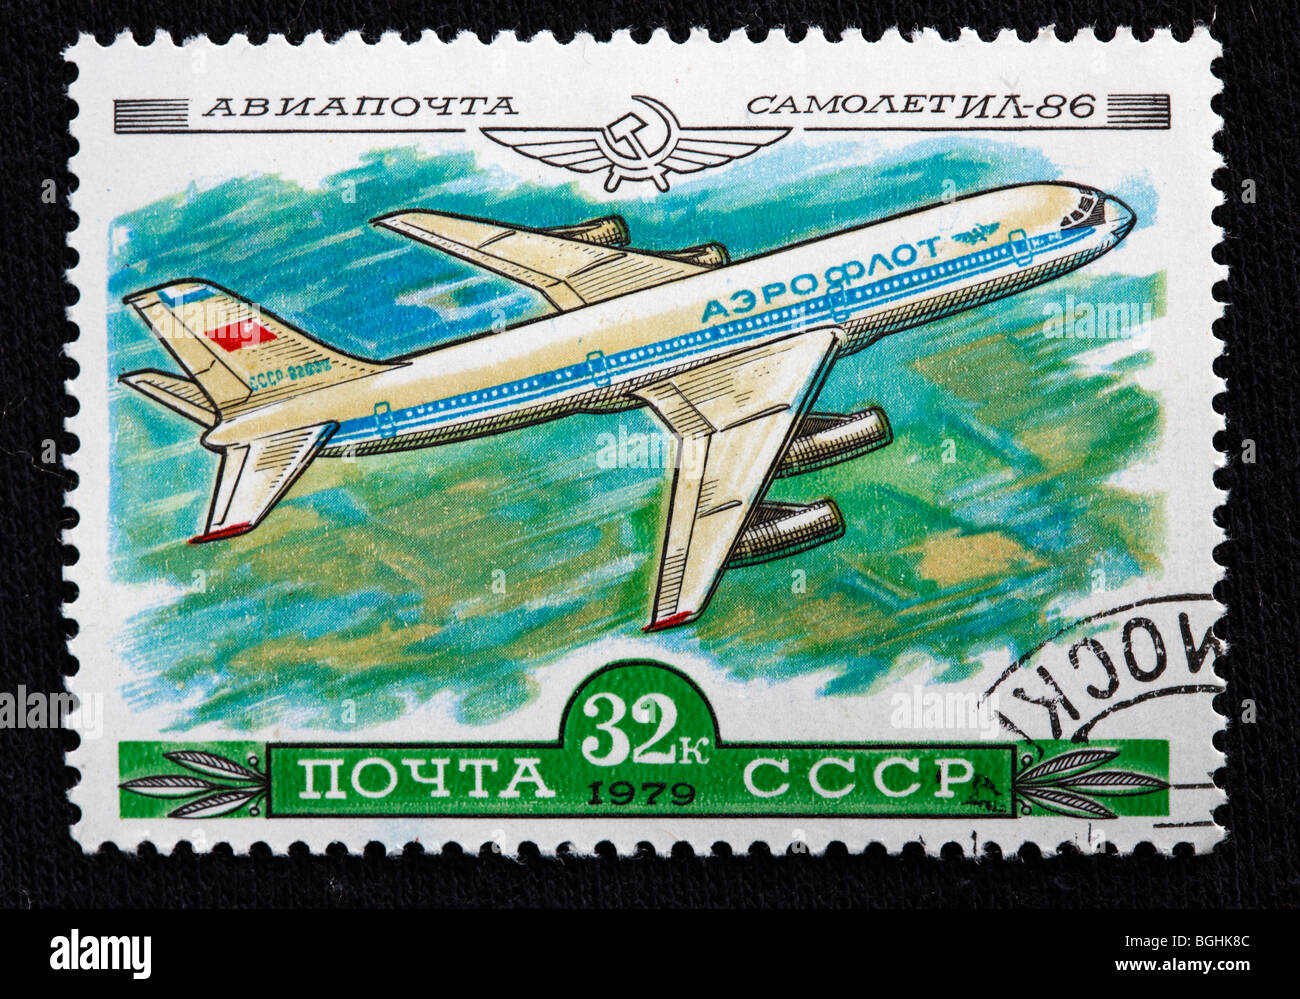 Histoire de l'aviation, avion Russe IL-86, timbre-poste, URSS, 1979 Banque D'Images